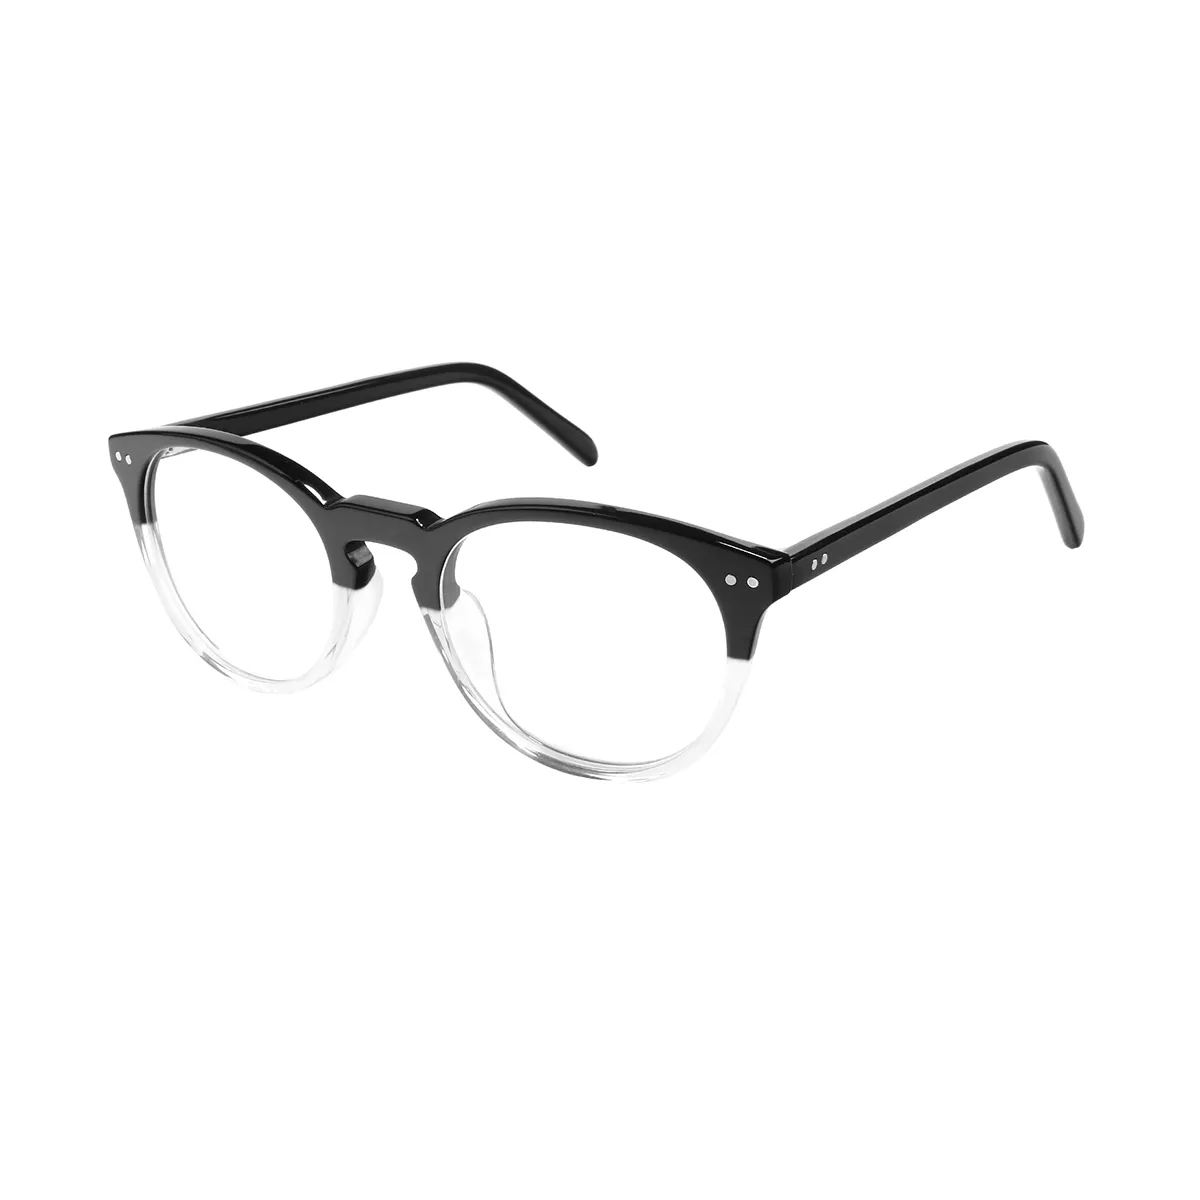 Ayliff - Oval Black Glasses for Men & Women